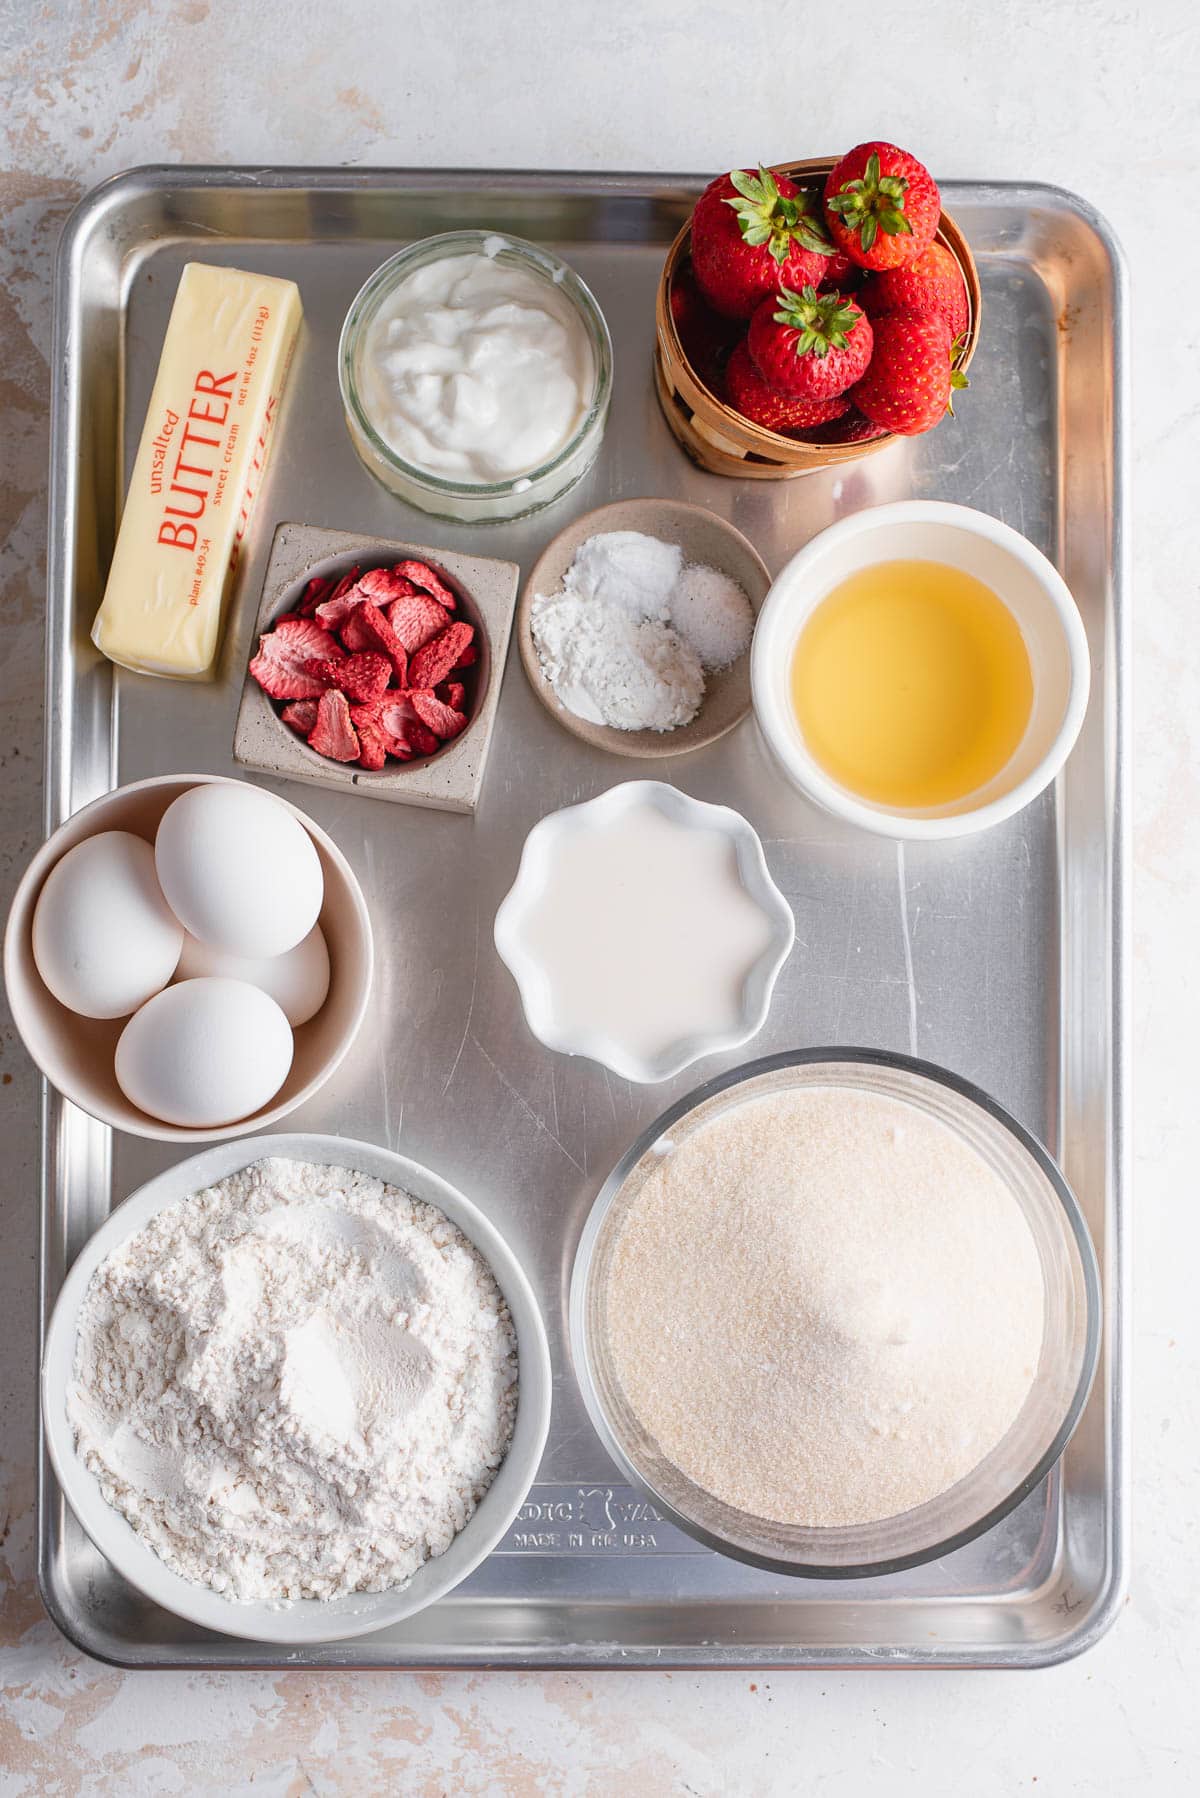 ingredients for sheet cake in bowls on baking sheet